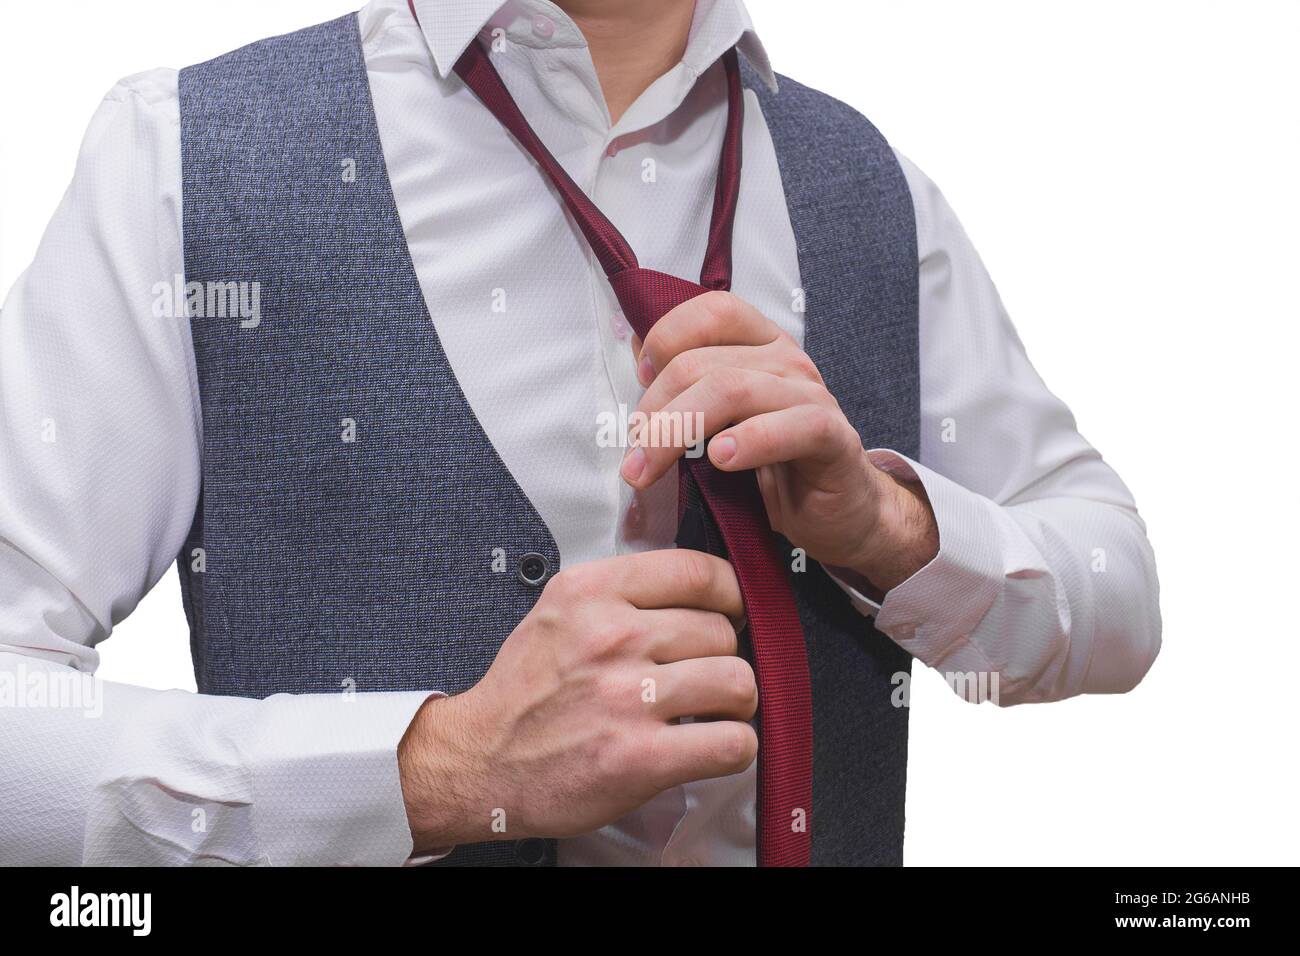 Die Hände des Mannes sind in einem weißen Hemd und einer grauen Weste mit einer roten Krawatte in Nahaufnahme gehalten. Stockfoto